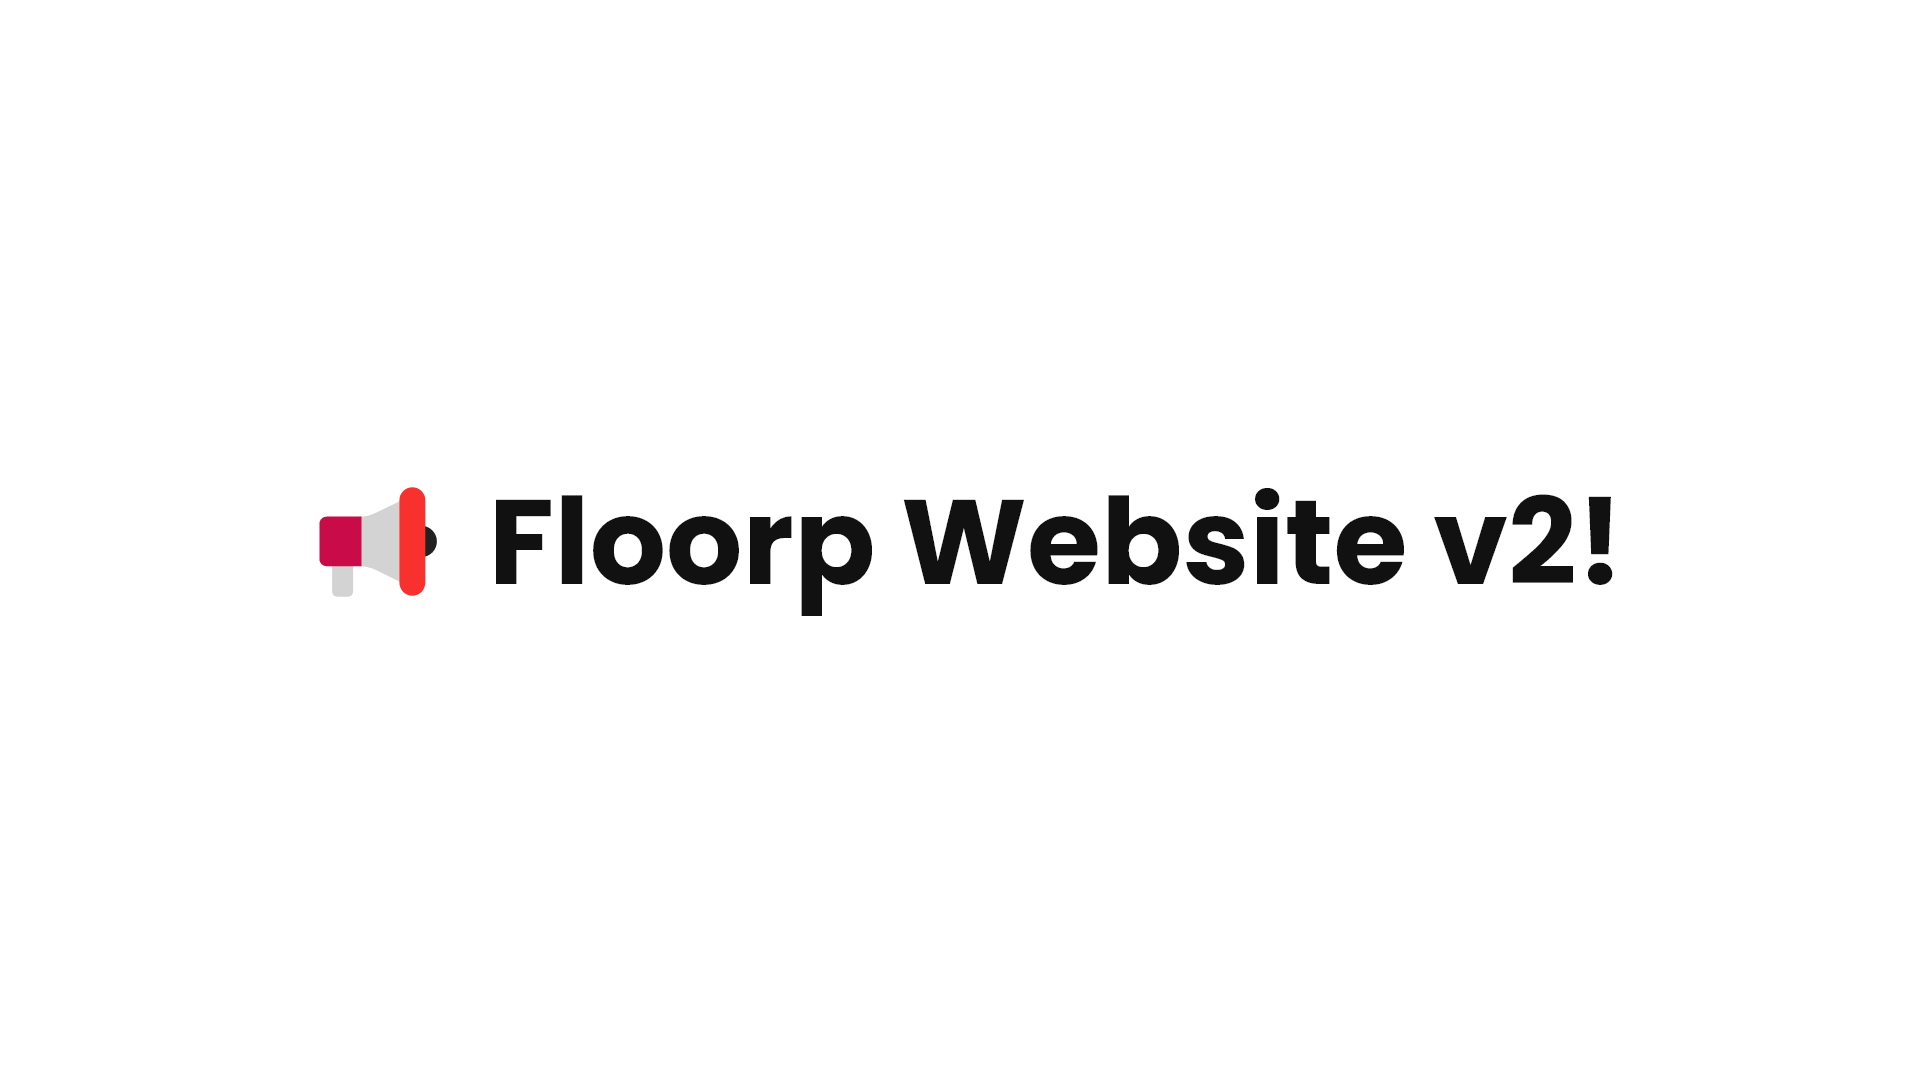 Floorp Website v2 公開のお知らせ